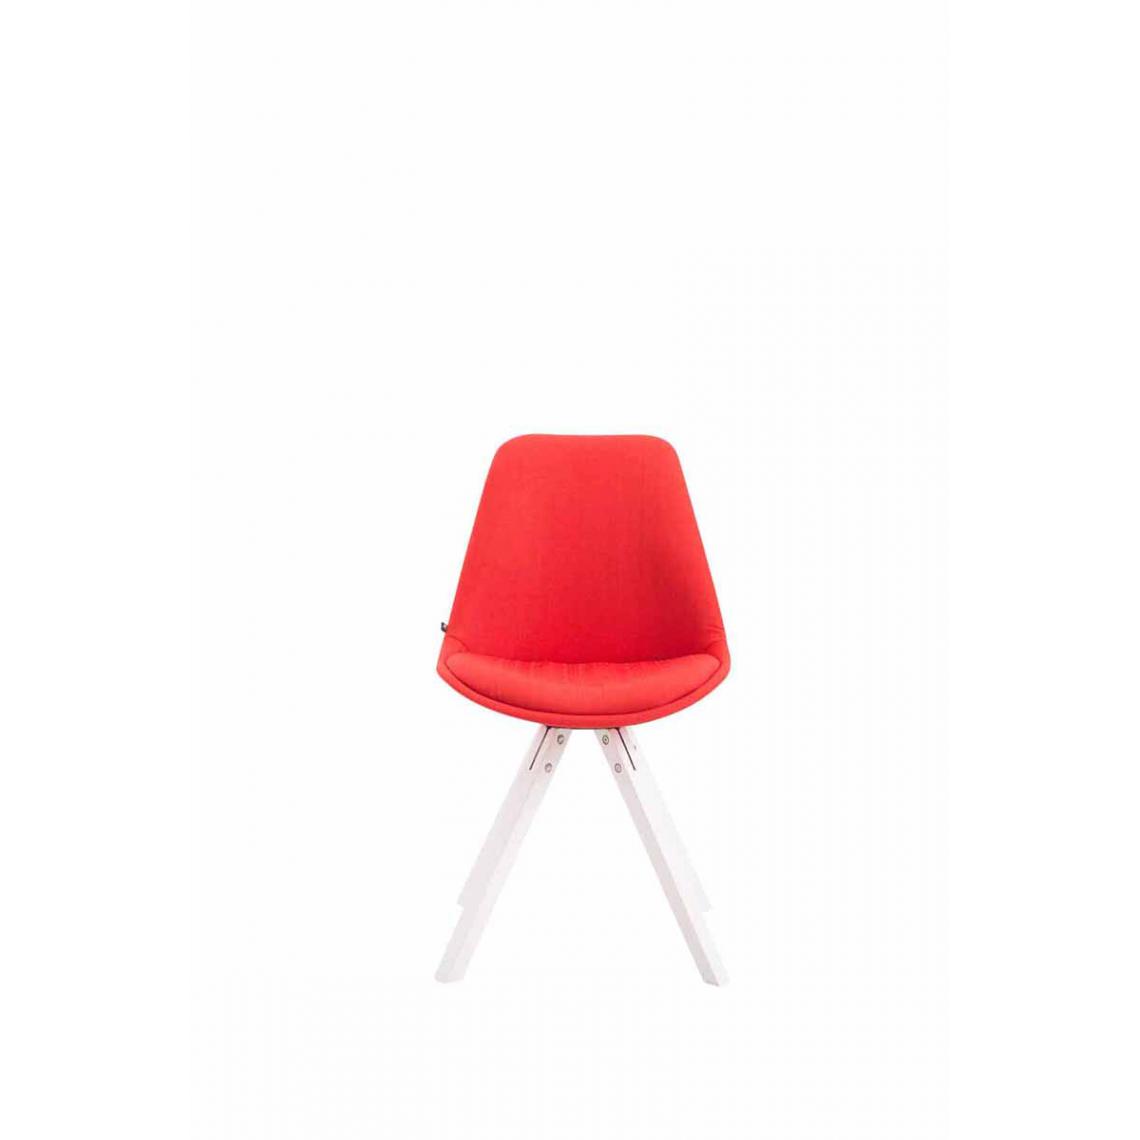 Icaverne - Splendide Chaise visiteur ligne Katmandou tissu carré blanc couleur rouge - Chaises